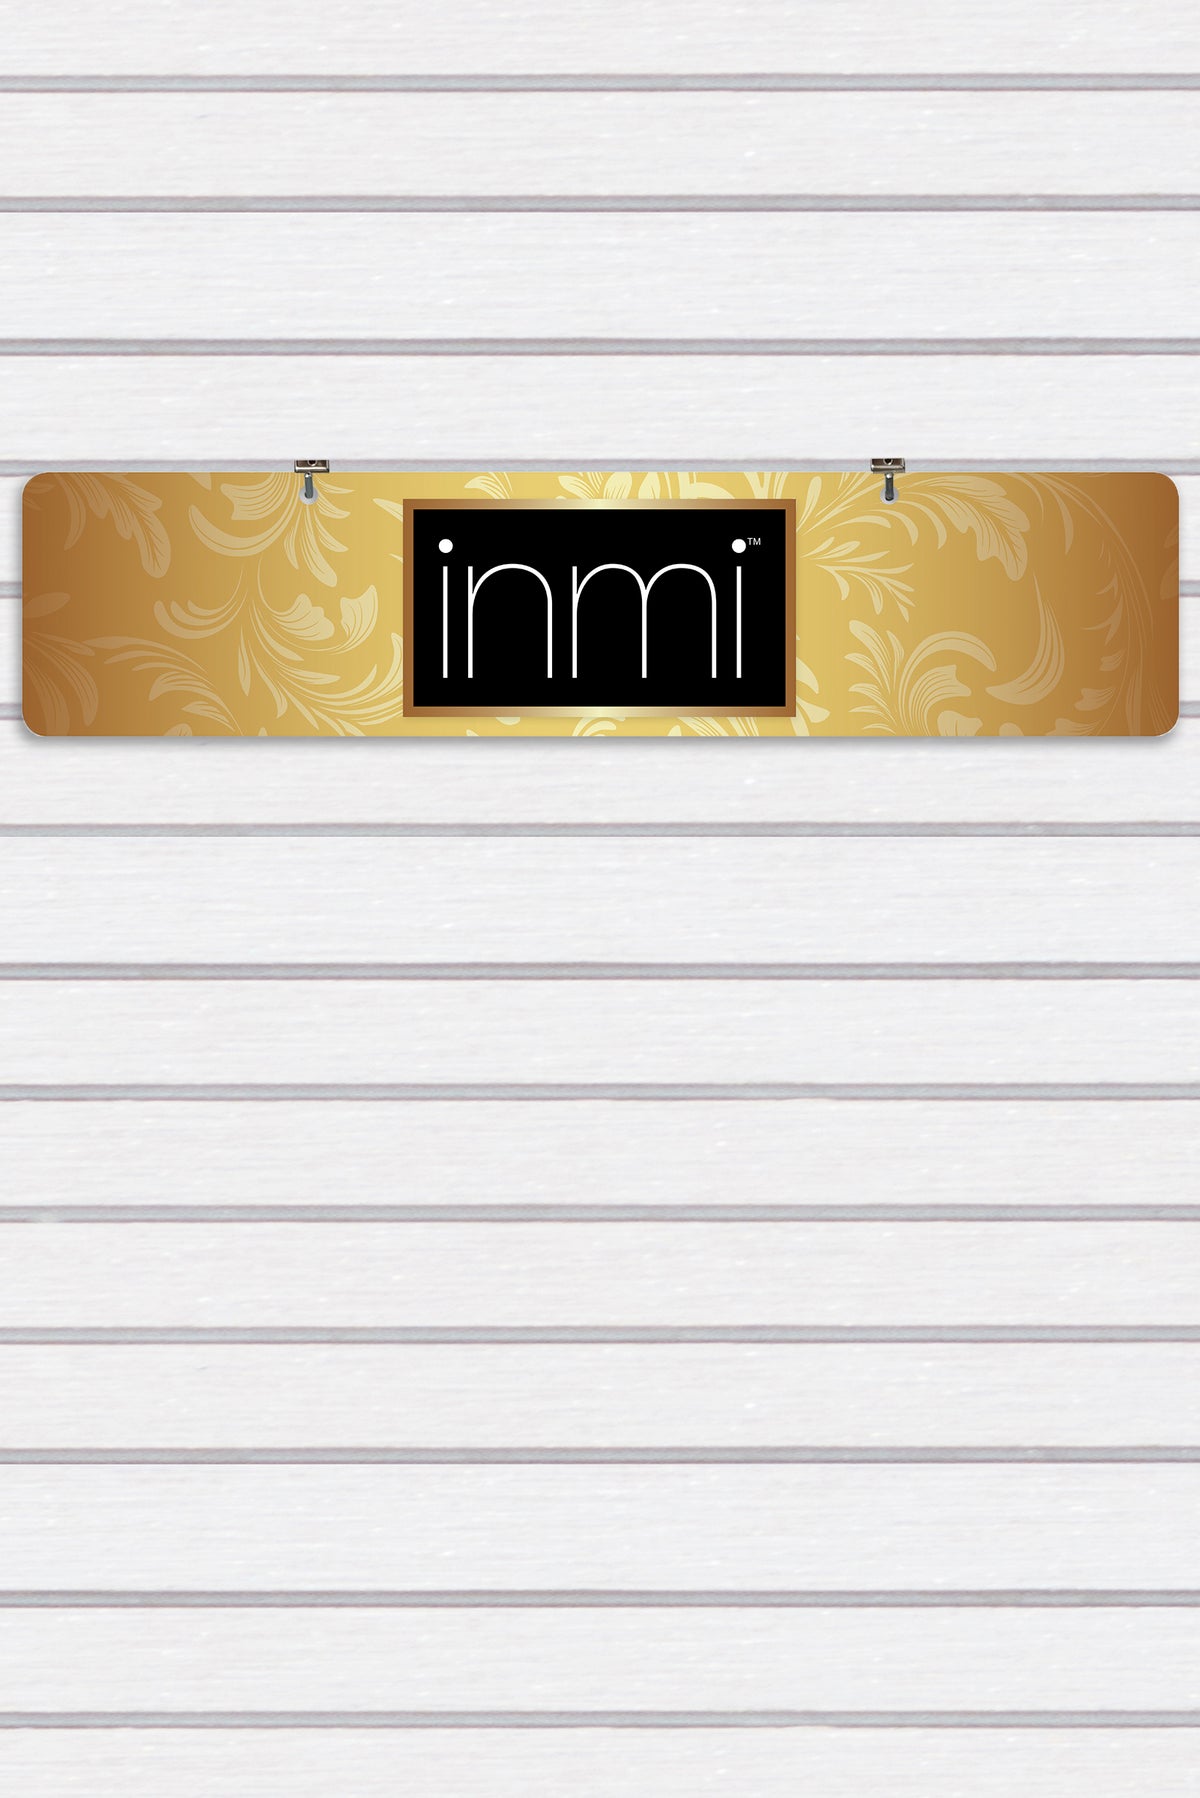 INMI Display Sign